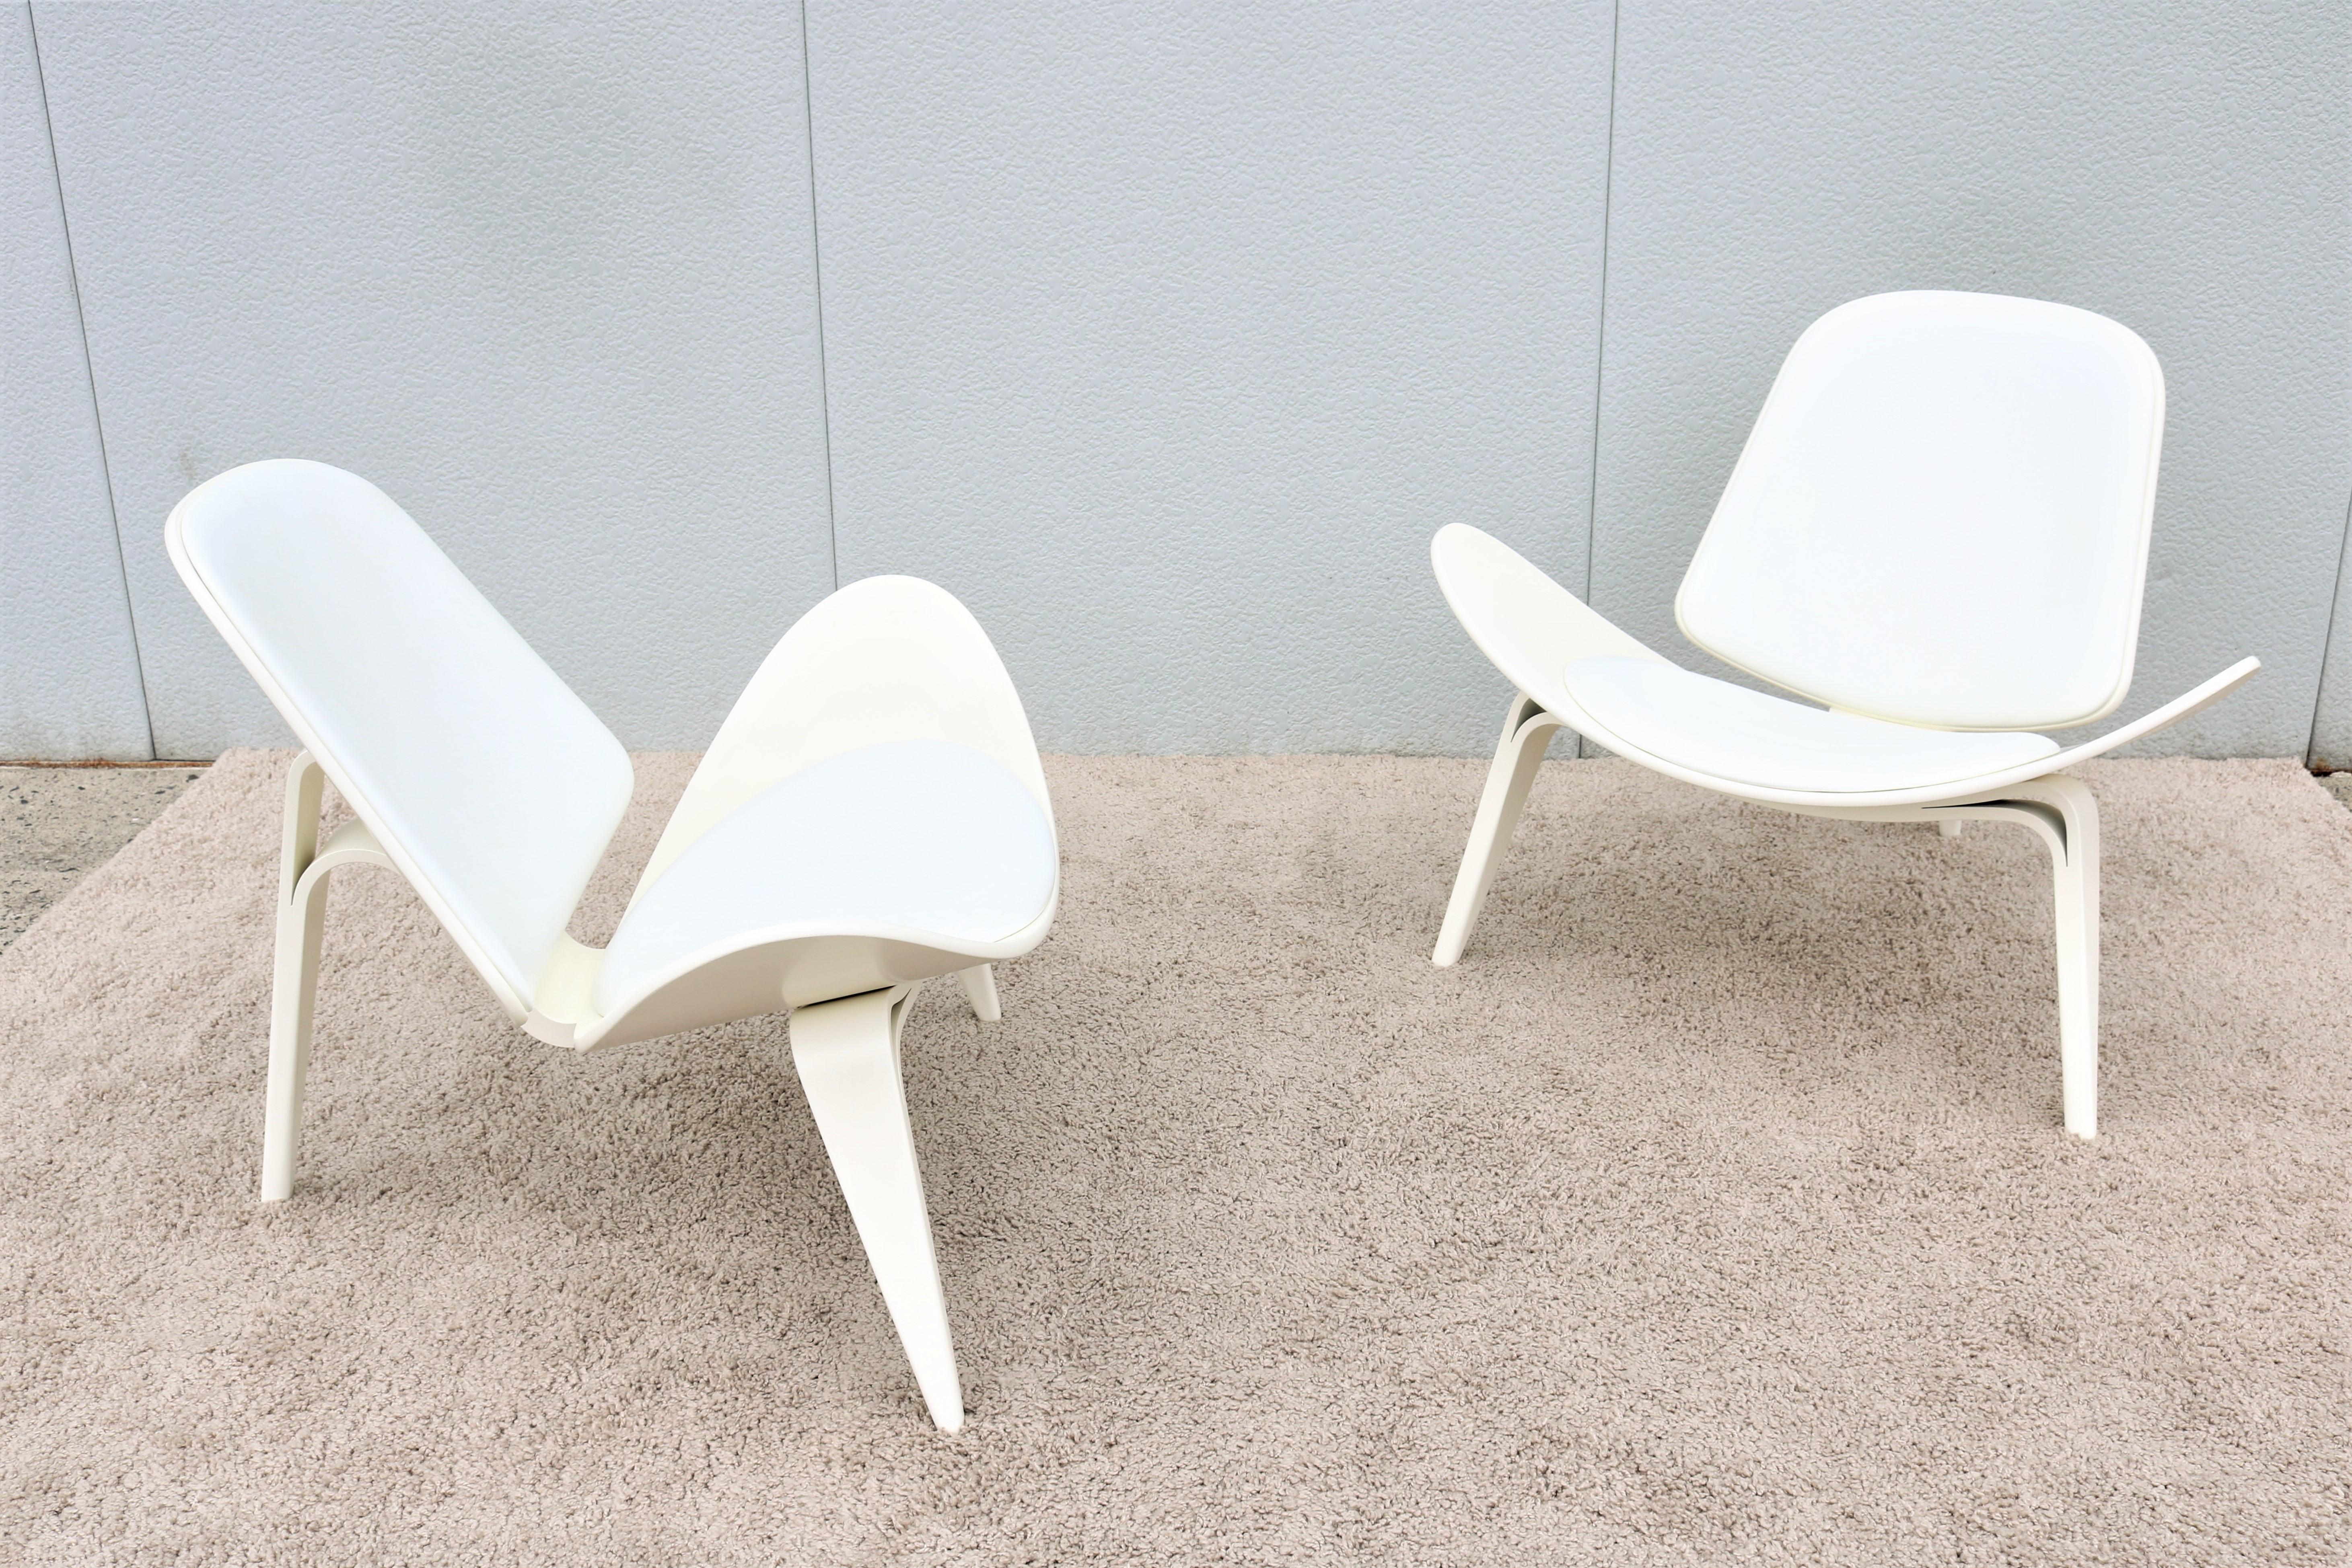 L'élégante chaise à coque CH07 est confortable et bien conçue ; elle est considérée comme l'un des designs les plus emblématiques et révolutionnaires de Hans J. Wegner.
Son assise en forme d'aile, son élégant dossier incurvé et ses trois pieds